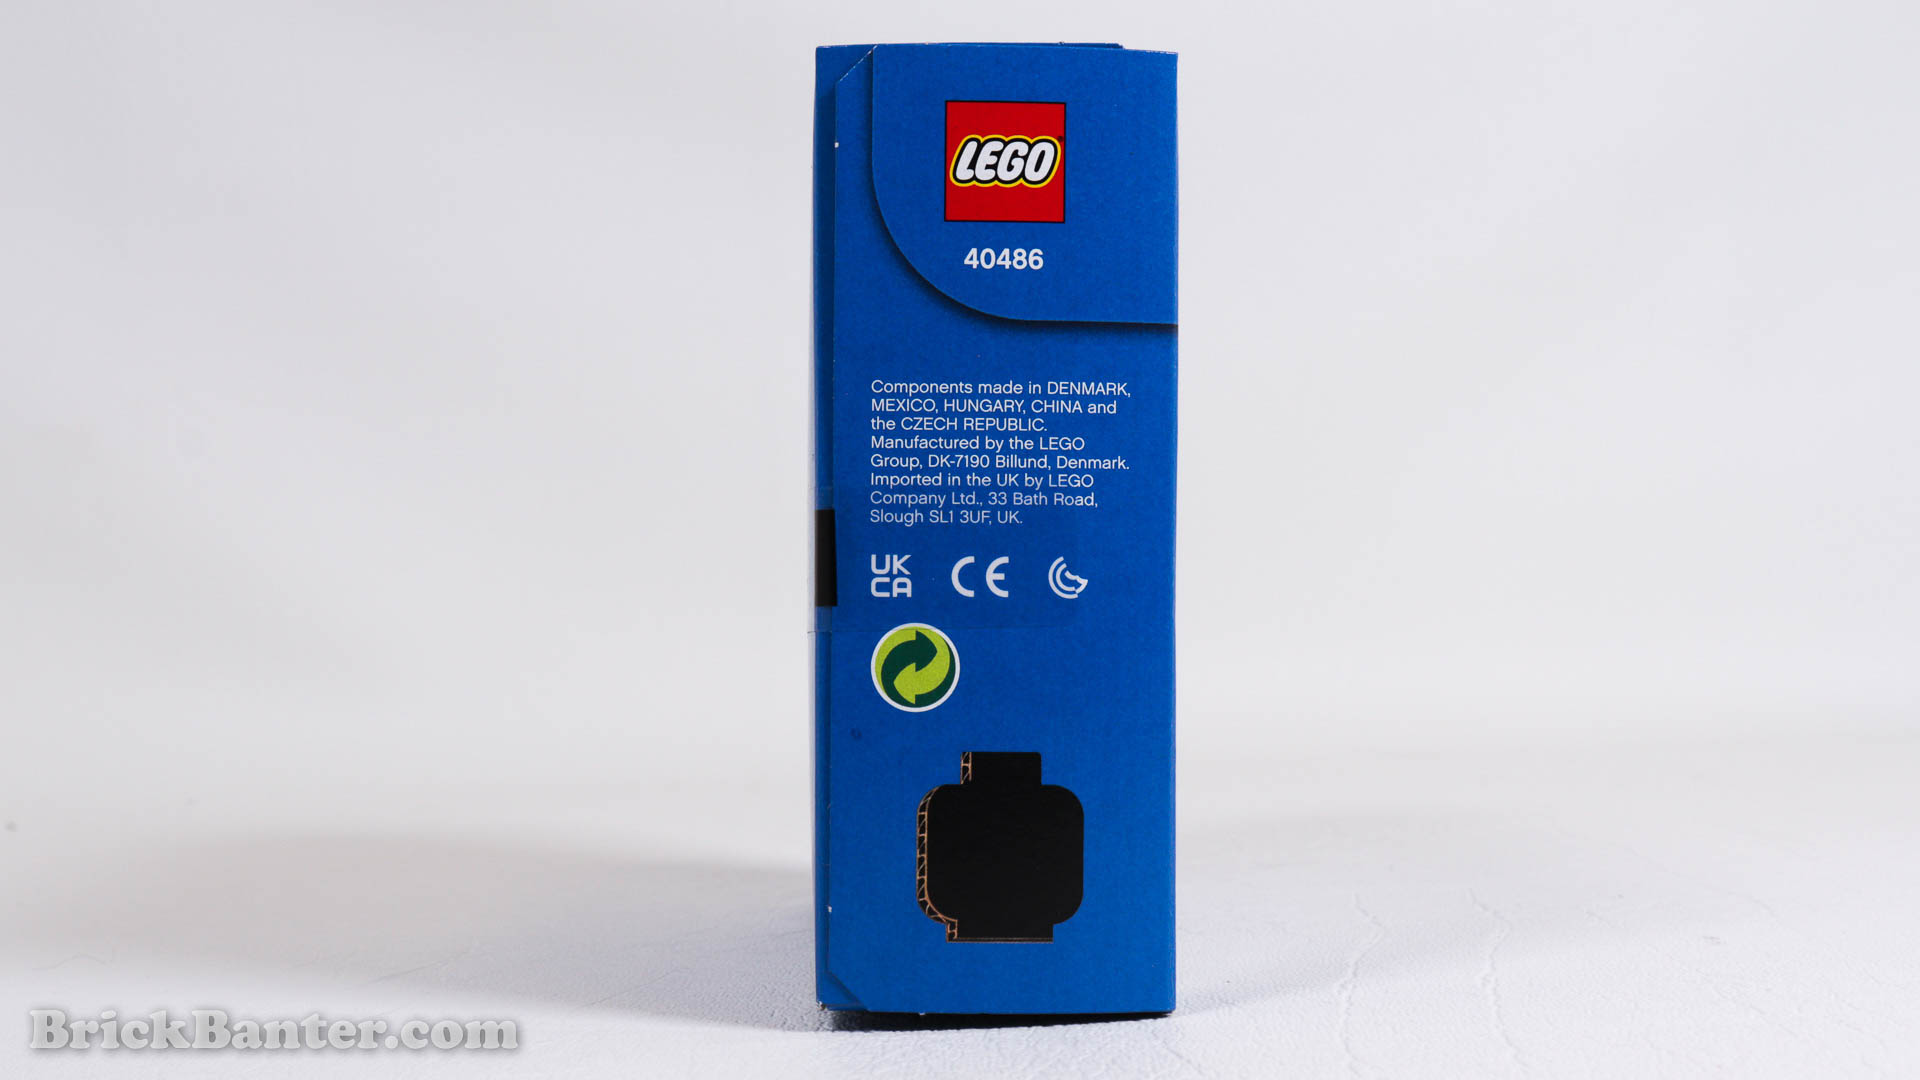 LEGO 40486 – adidas GWP